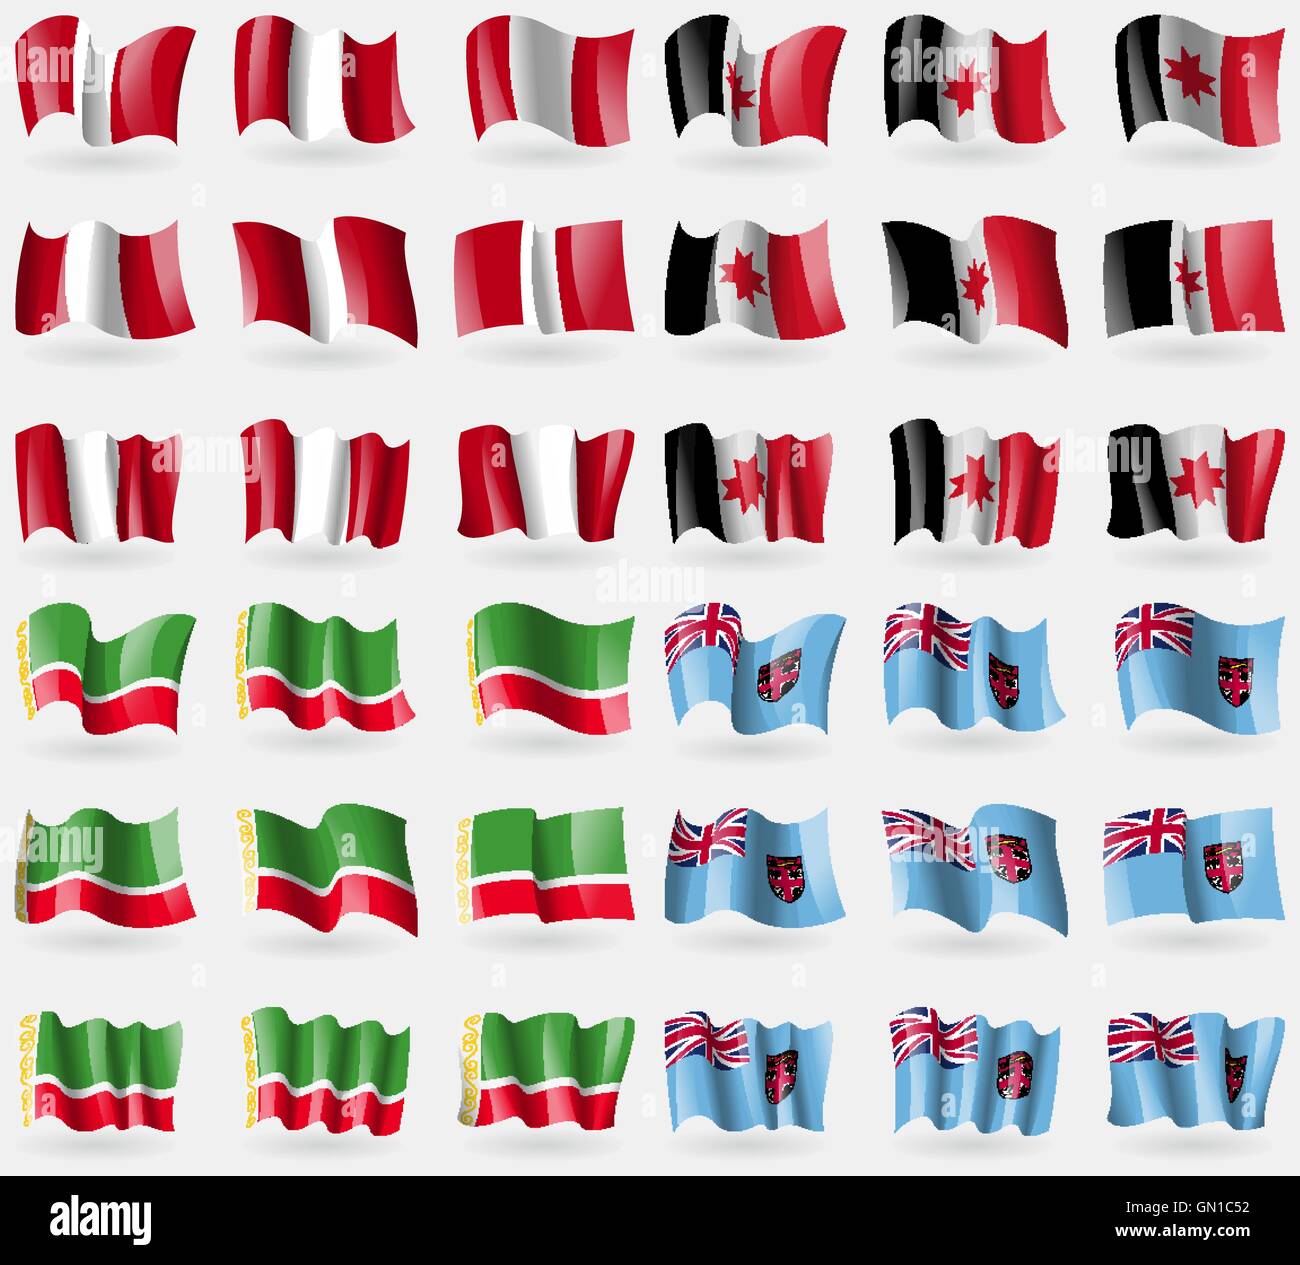 Il Perù, Udmurtia, Repubblica Cecena Fiji. Set di 36 bandiere dei paesi del mondo. Vettore Illustrazione Vettoriale